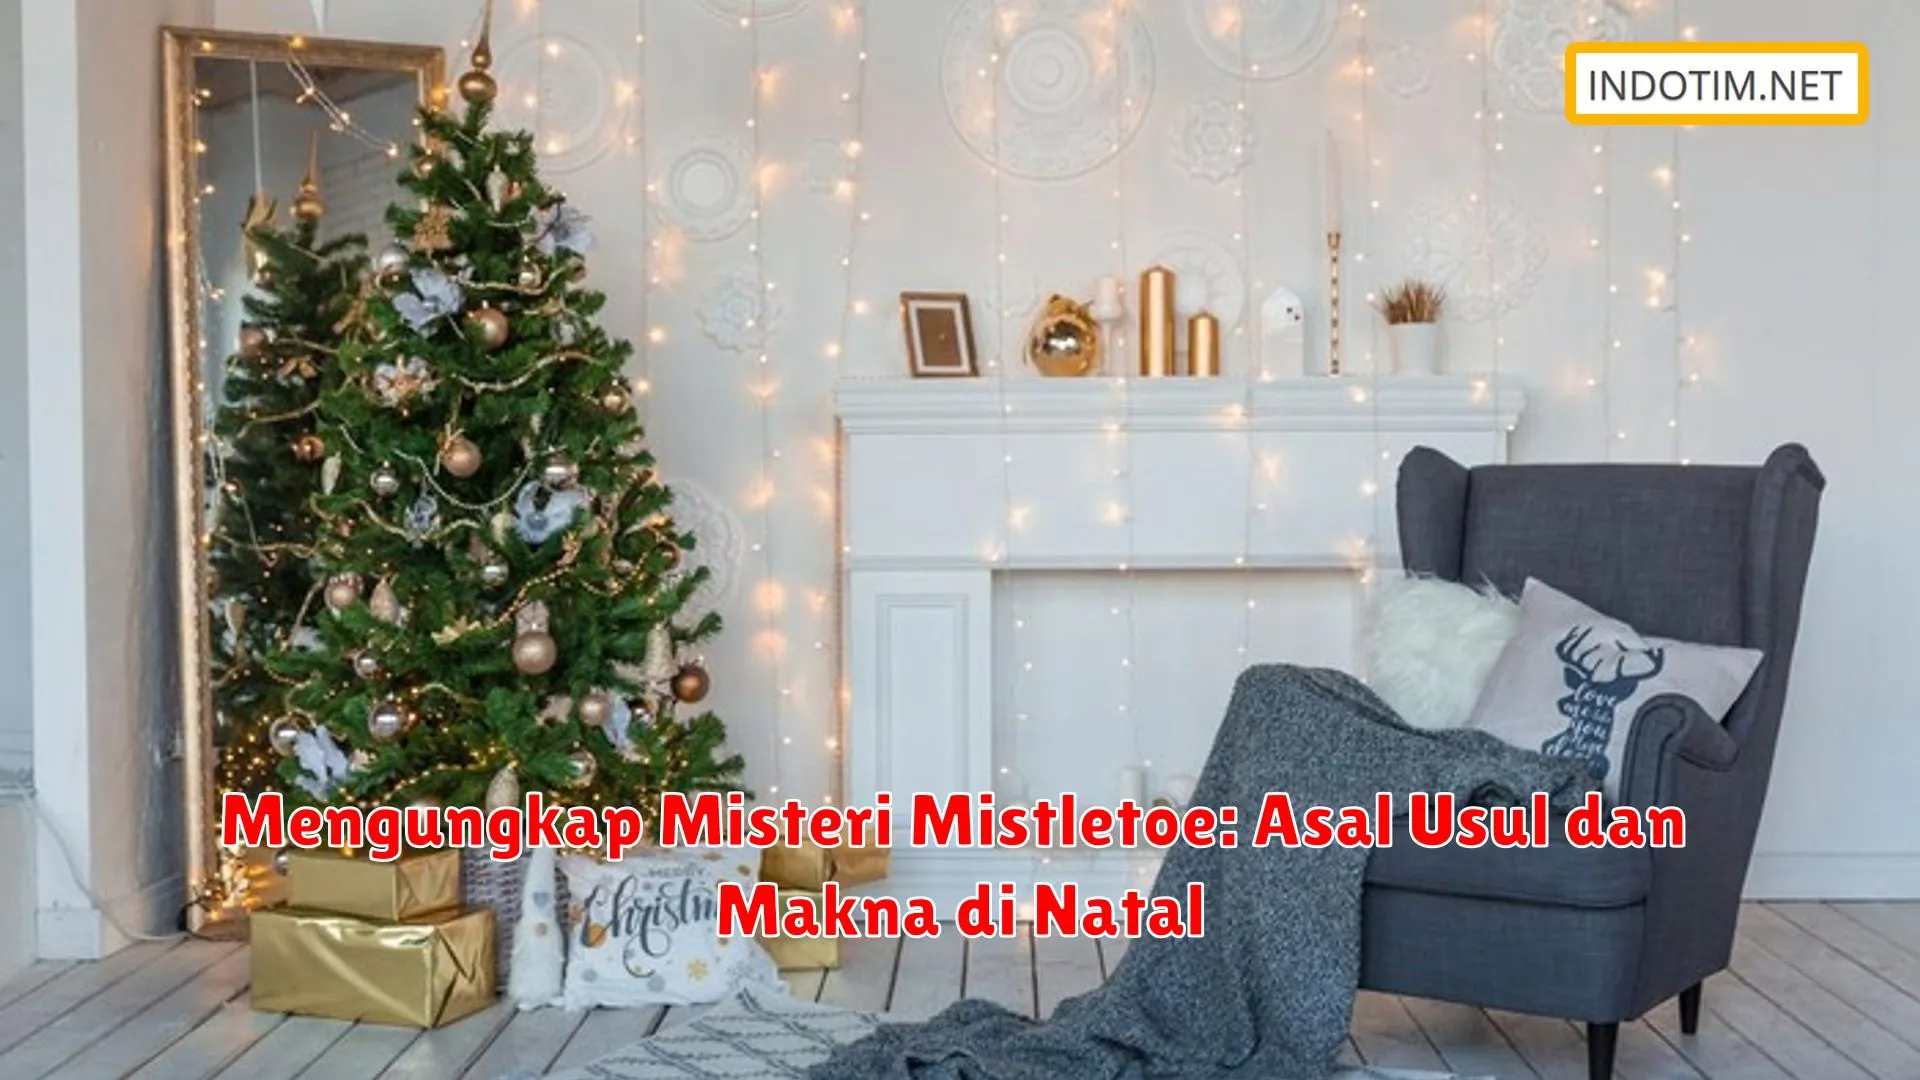 Mengungkap Misteri Mistletoe: Asal Usul dan Makna di Natal